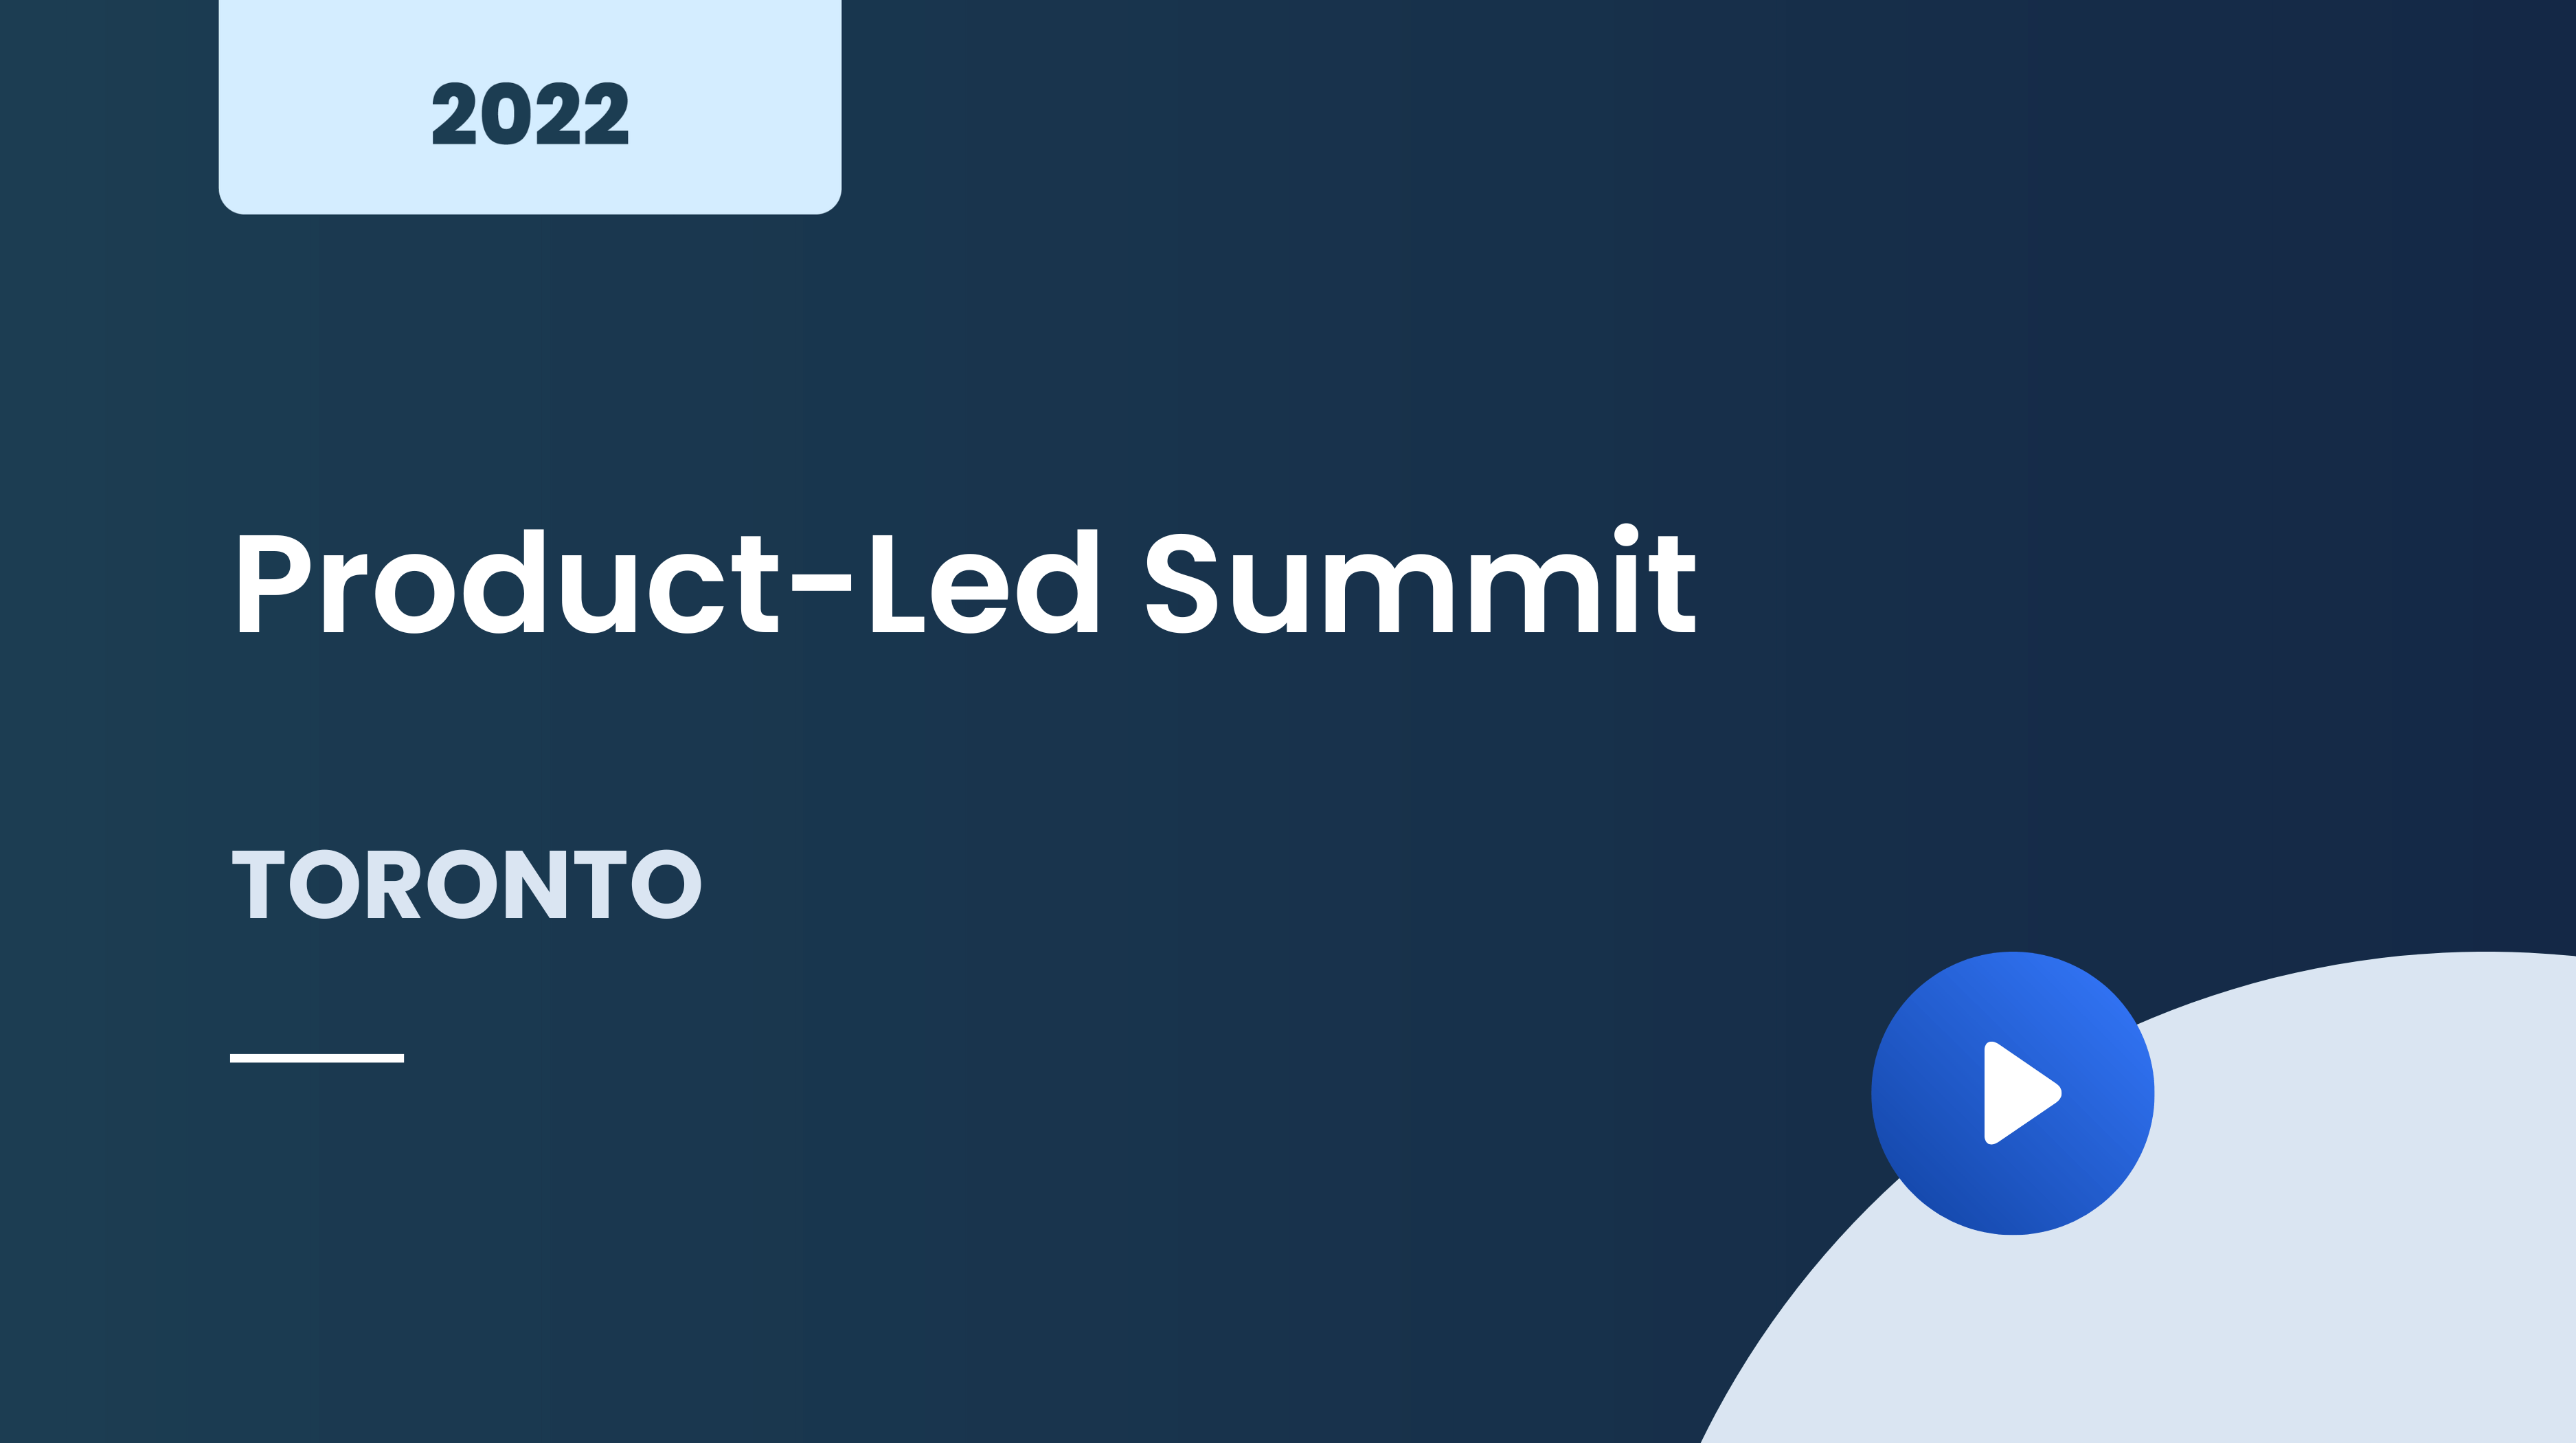 Product-Led Summit Toronto 2022